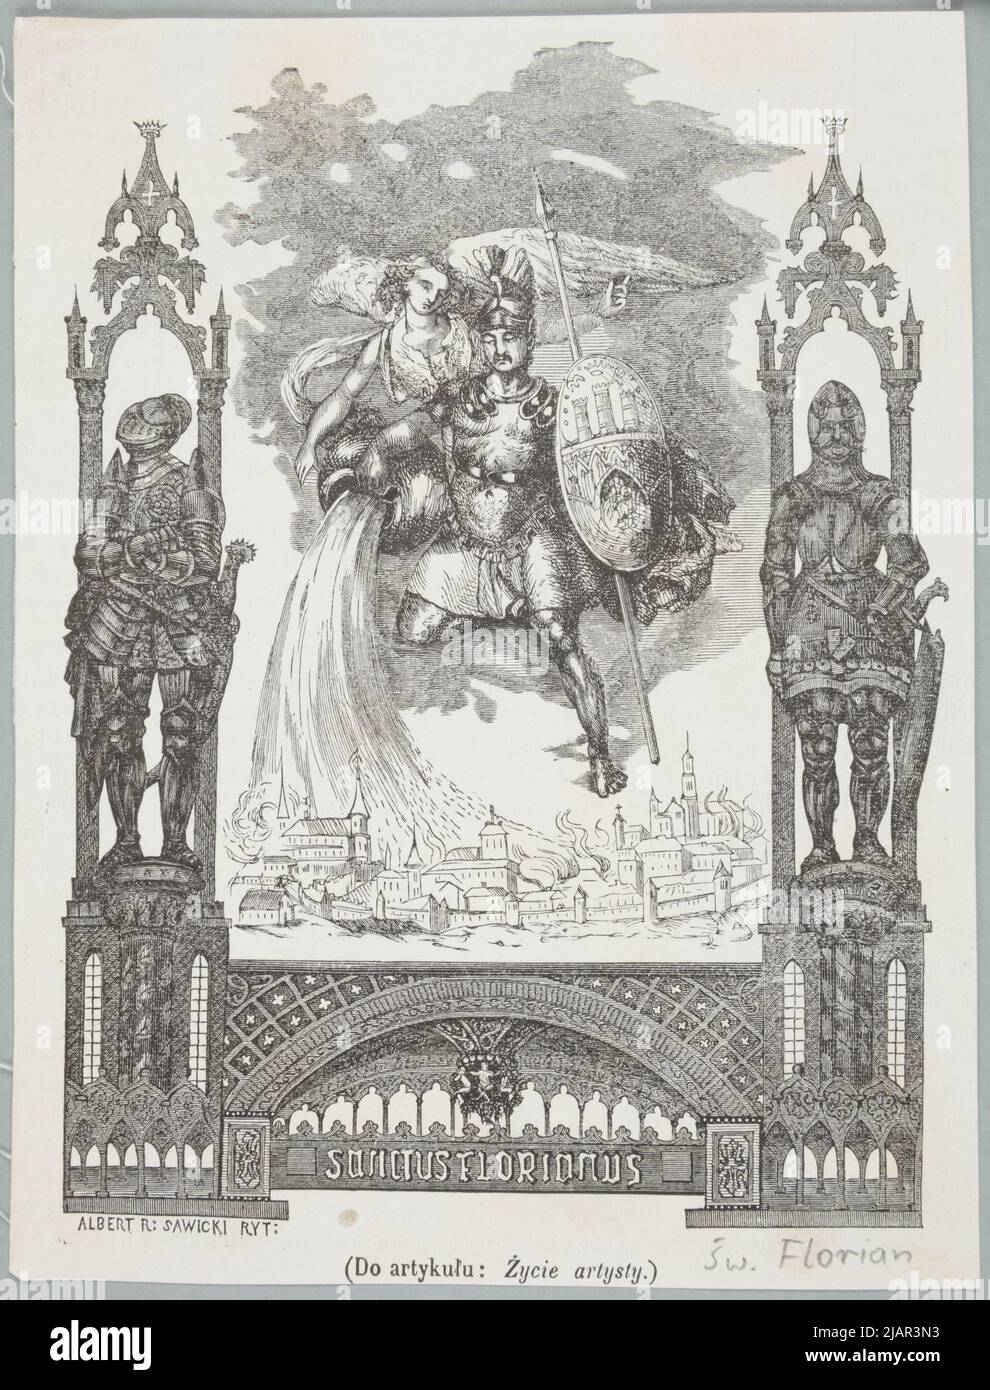 Heiliger. Florian (2. Hälfte des 3.. Jahrhunderts Ceti 304 Lauriacum) christlicher Märtyrer Sawicki, A., Albert, Rafael (1884) Stockfoto